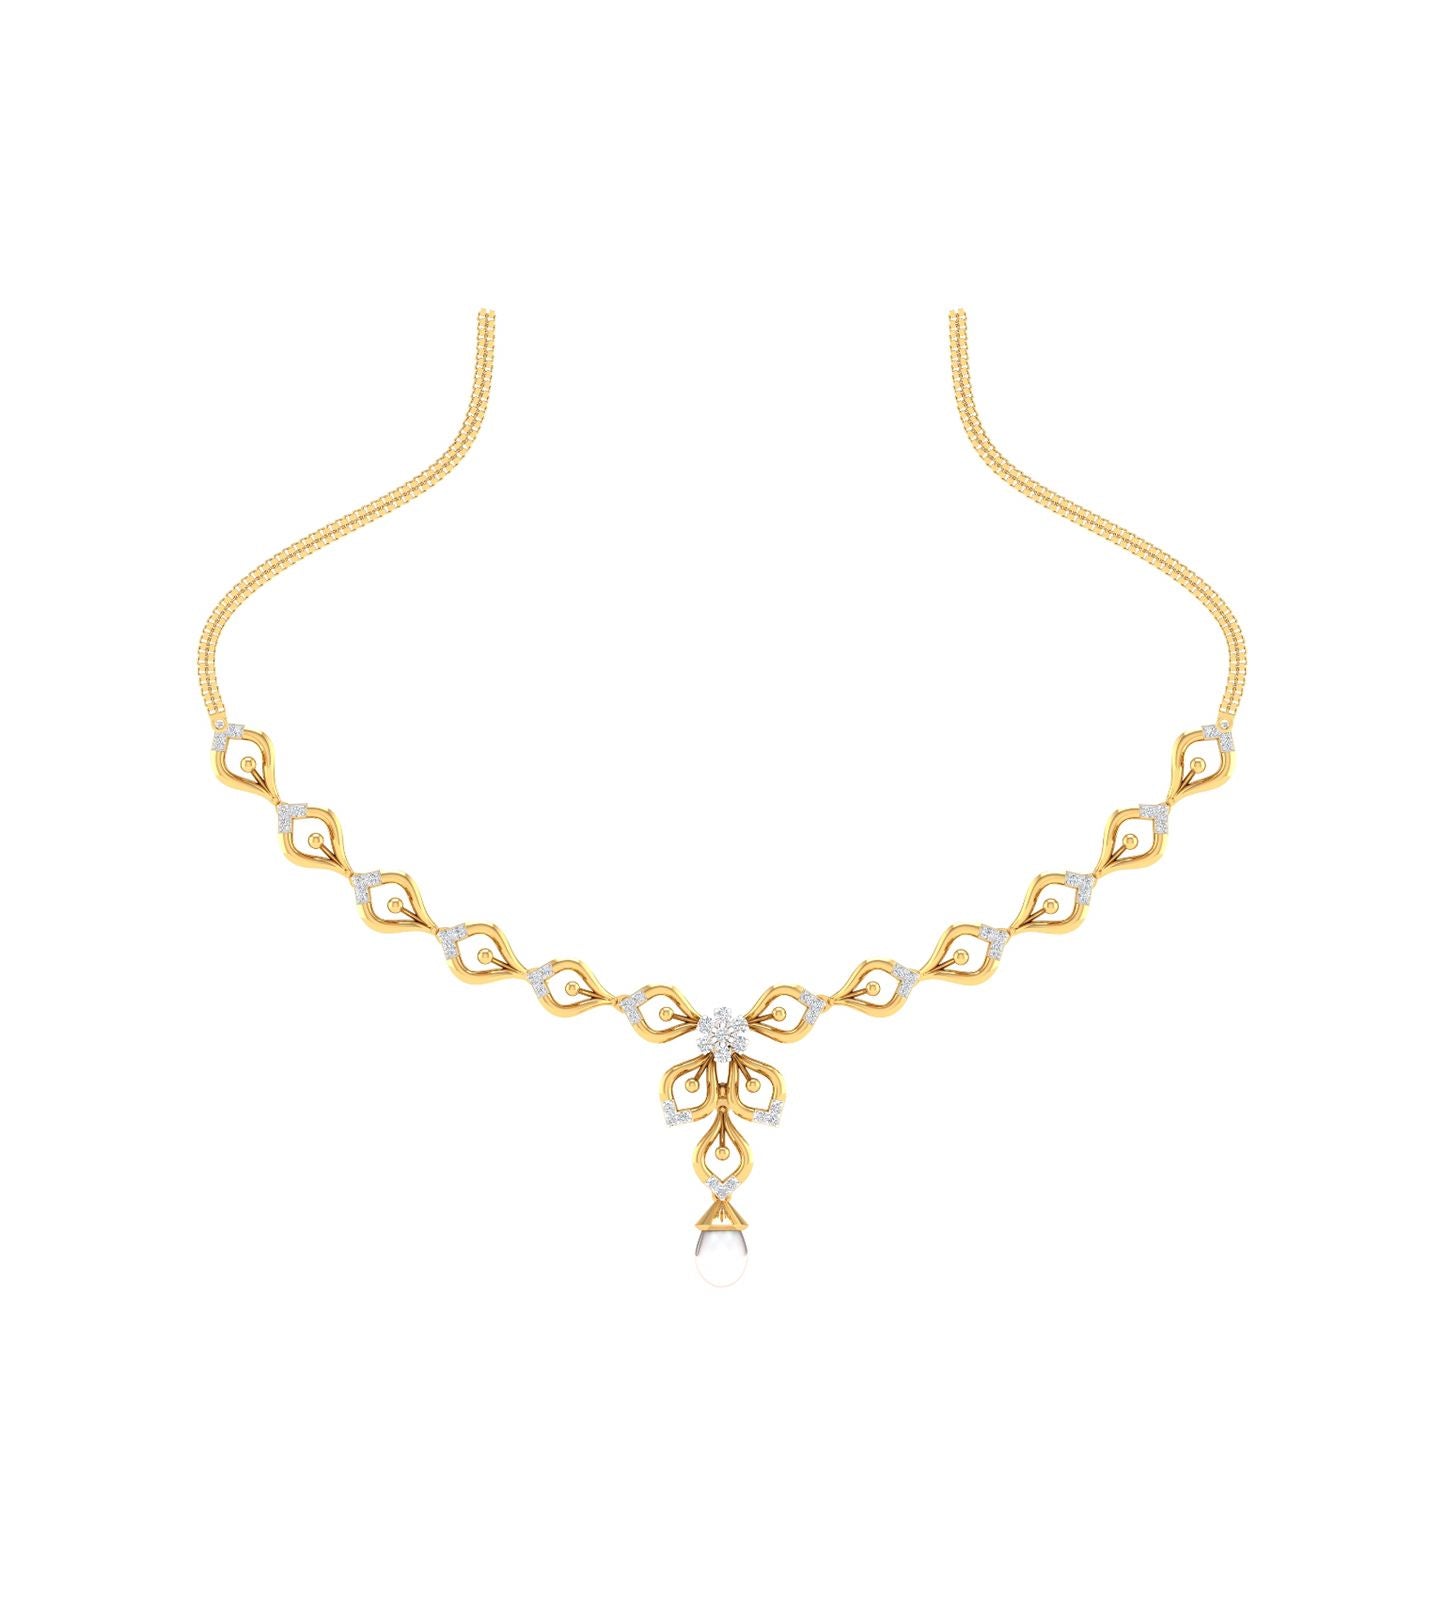 Diamond Studded Gold Necklace